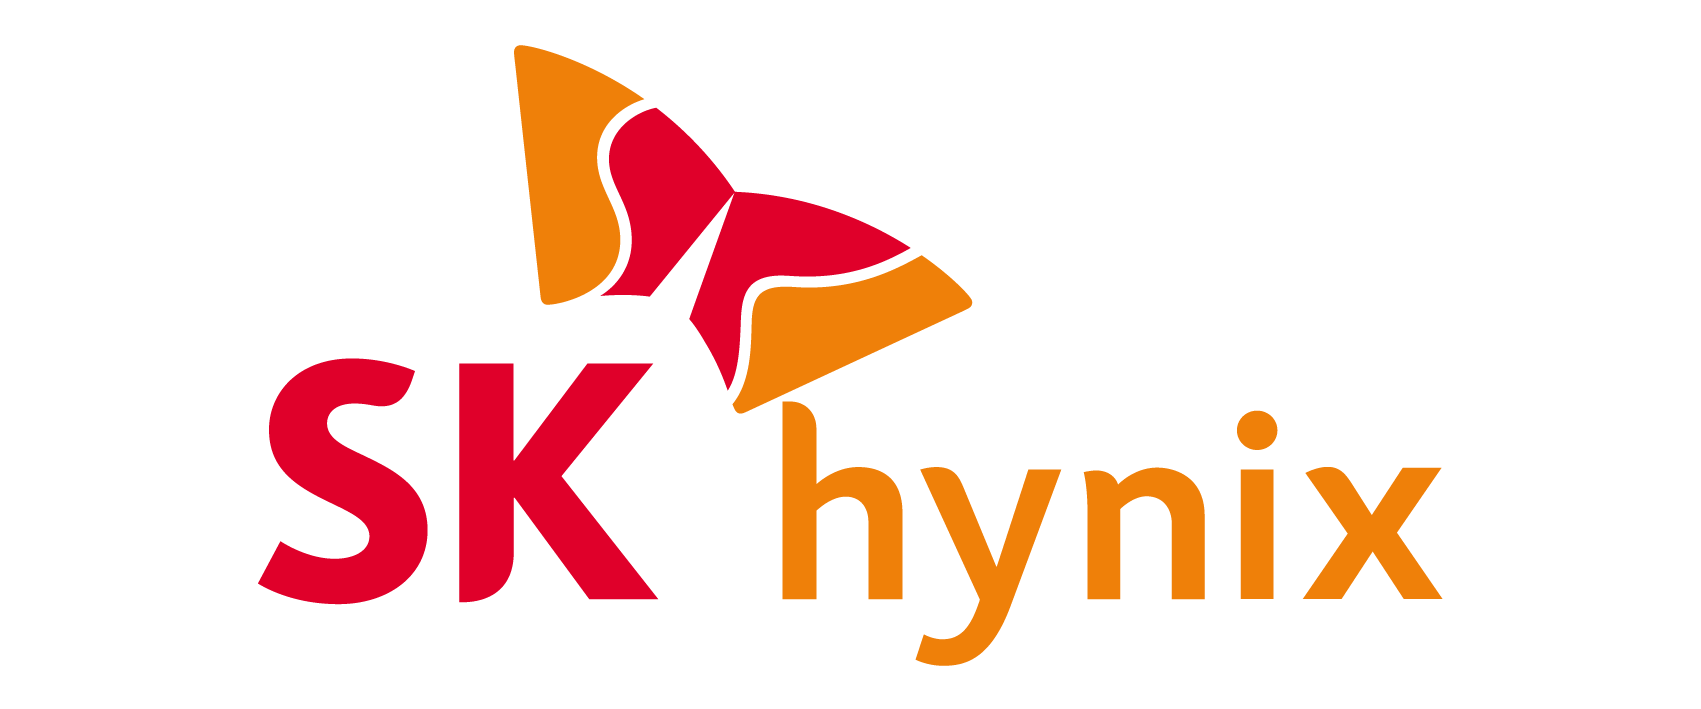 SK hynix logo